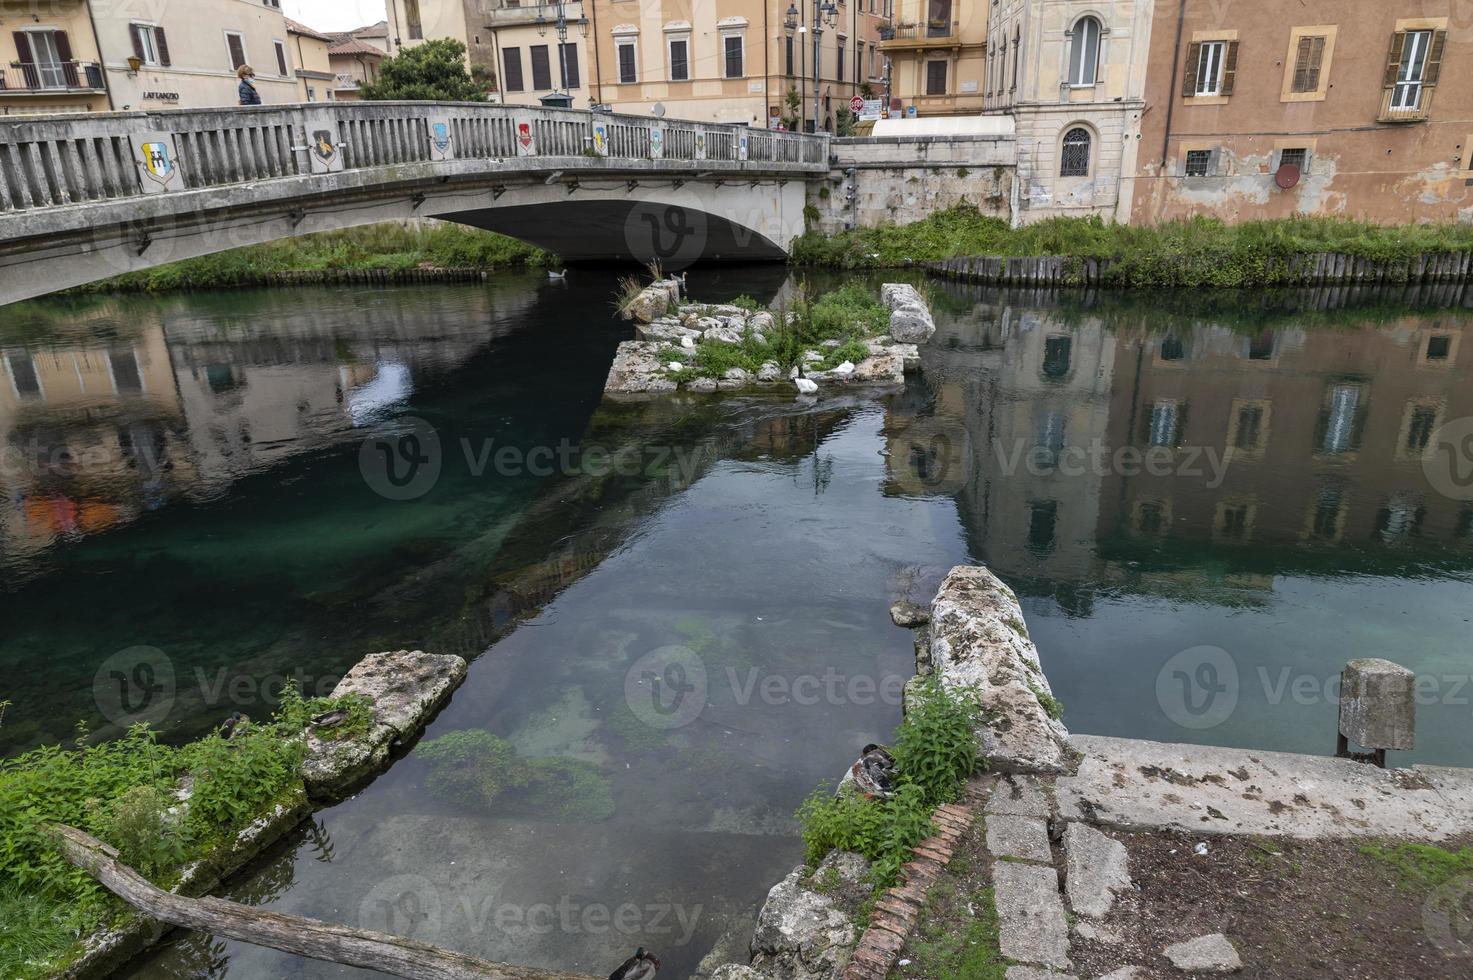 ponte romana sobre o rio velino na cidade de rieti, itália, 2020 foto